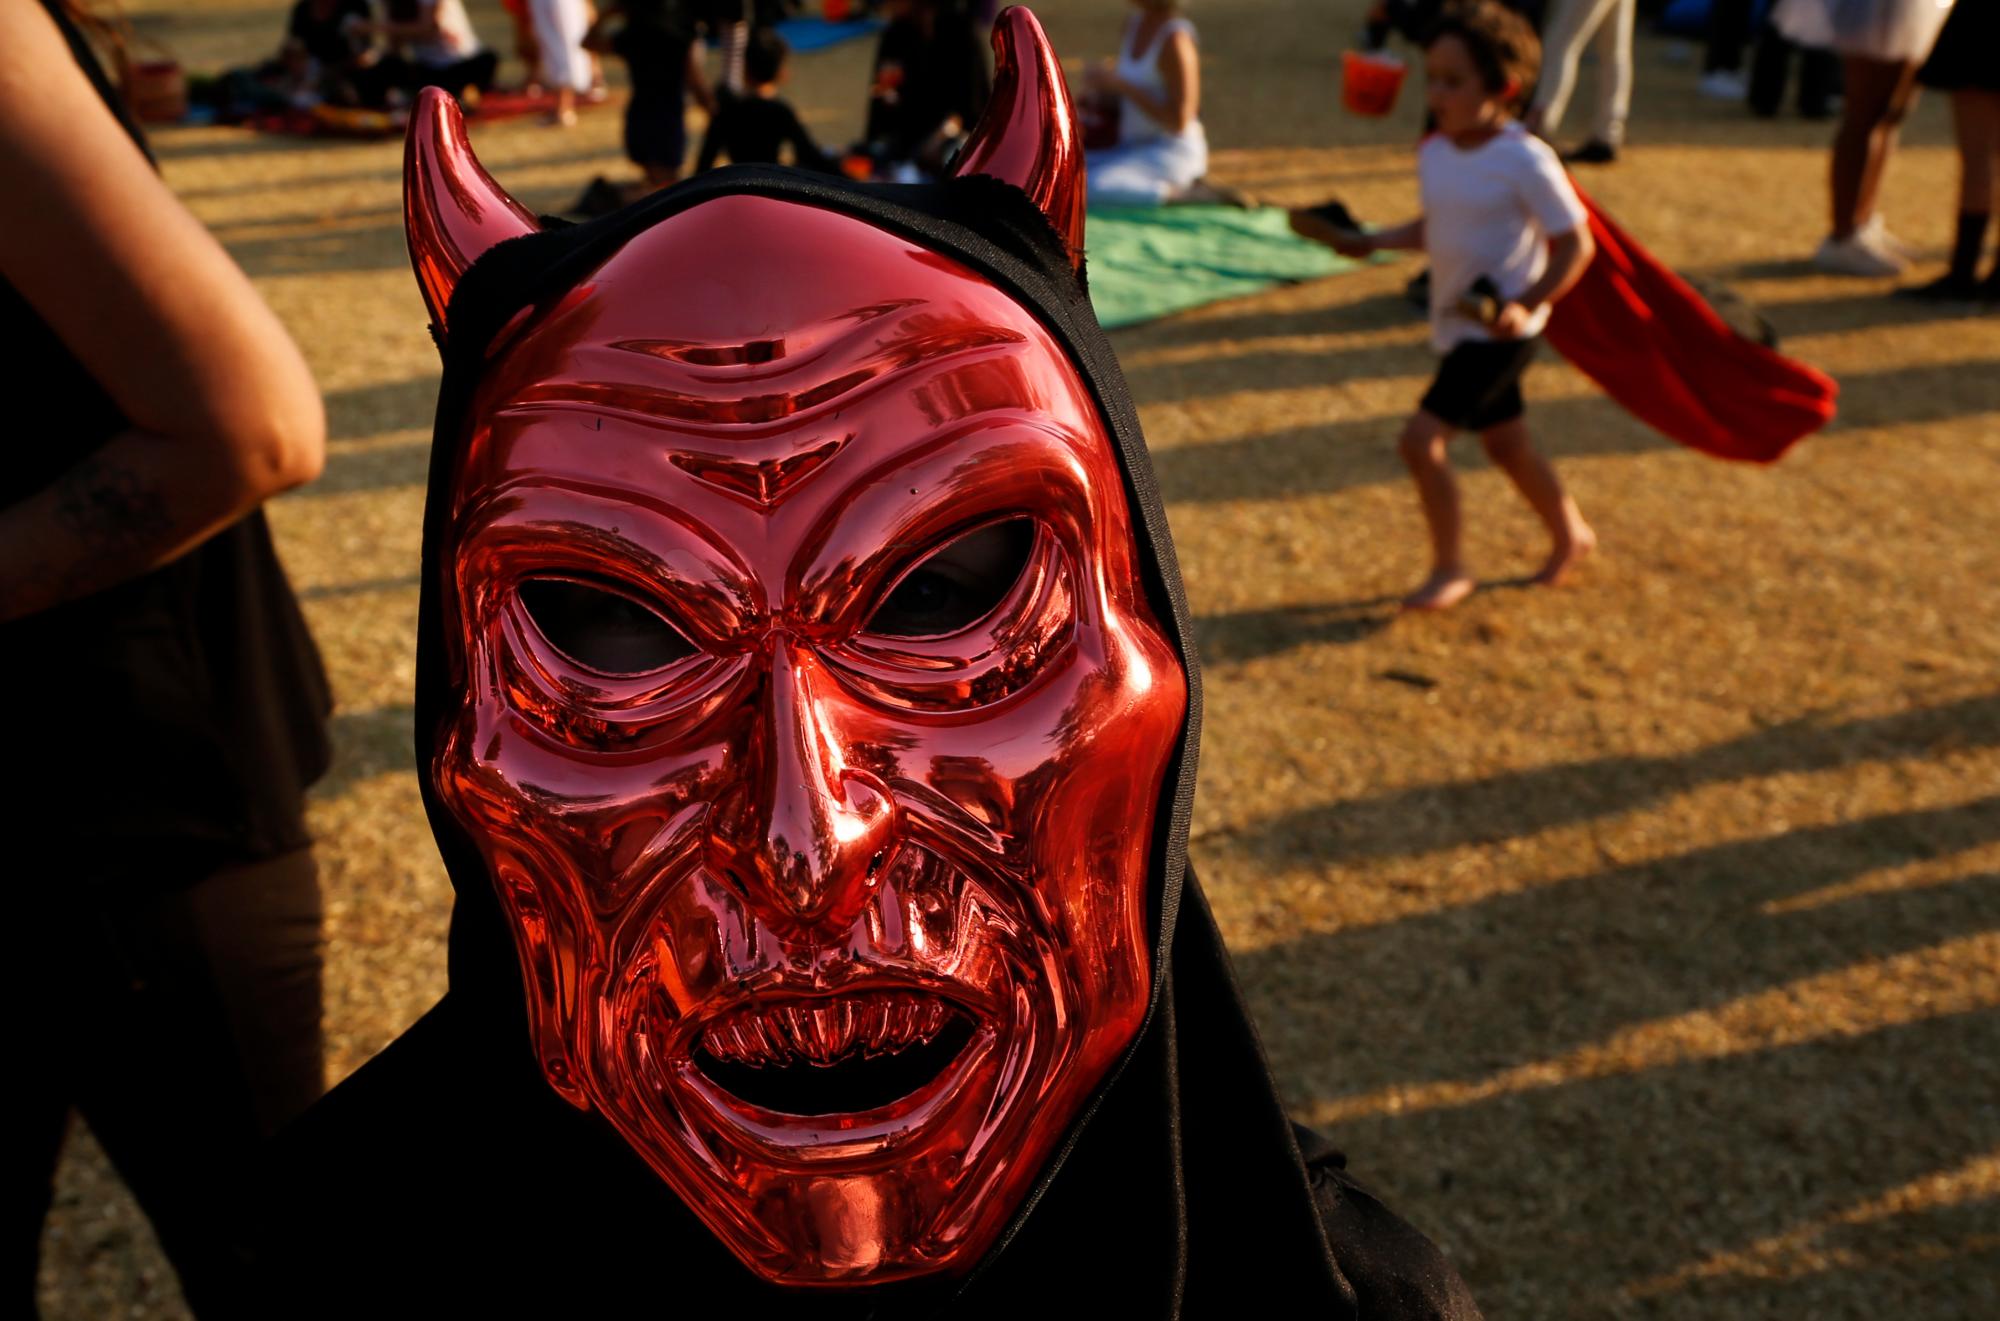 Un juerguista usa una máscara satánica durante las celebraciones para conmemorar Halloween en un parque en Johannesburgo, Sudáfrica, el jueves 31 de octubre de 2019.